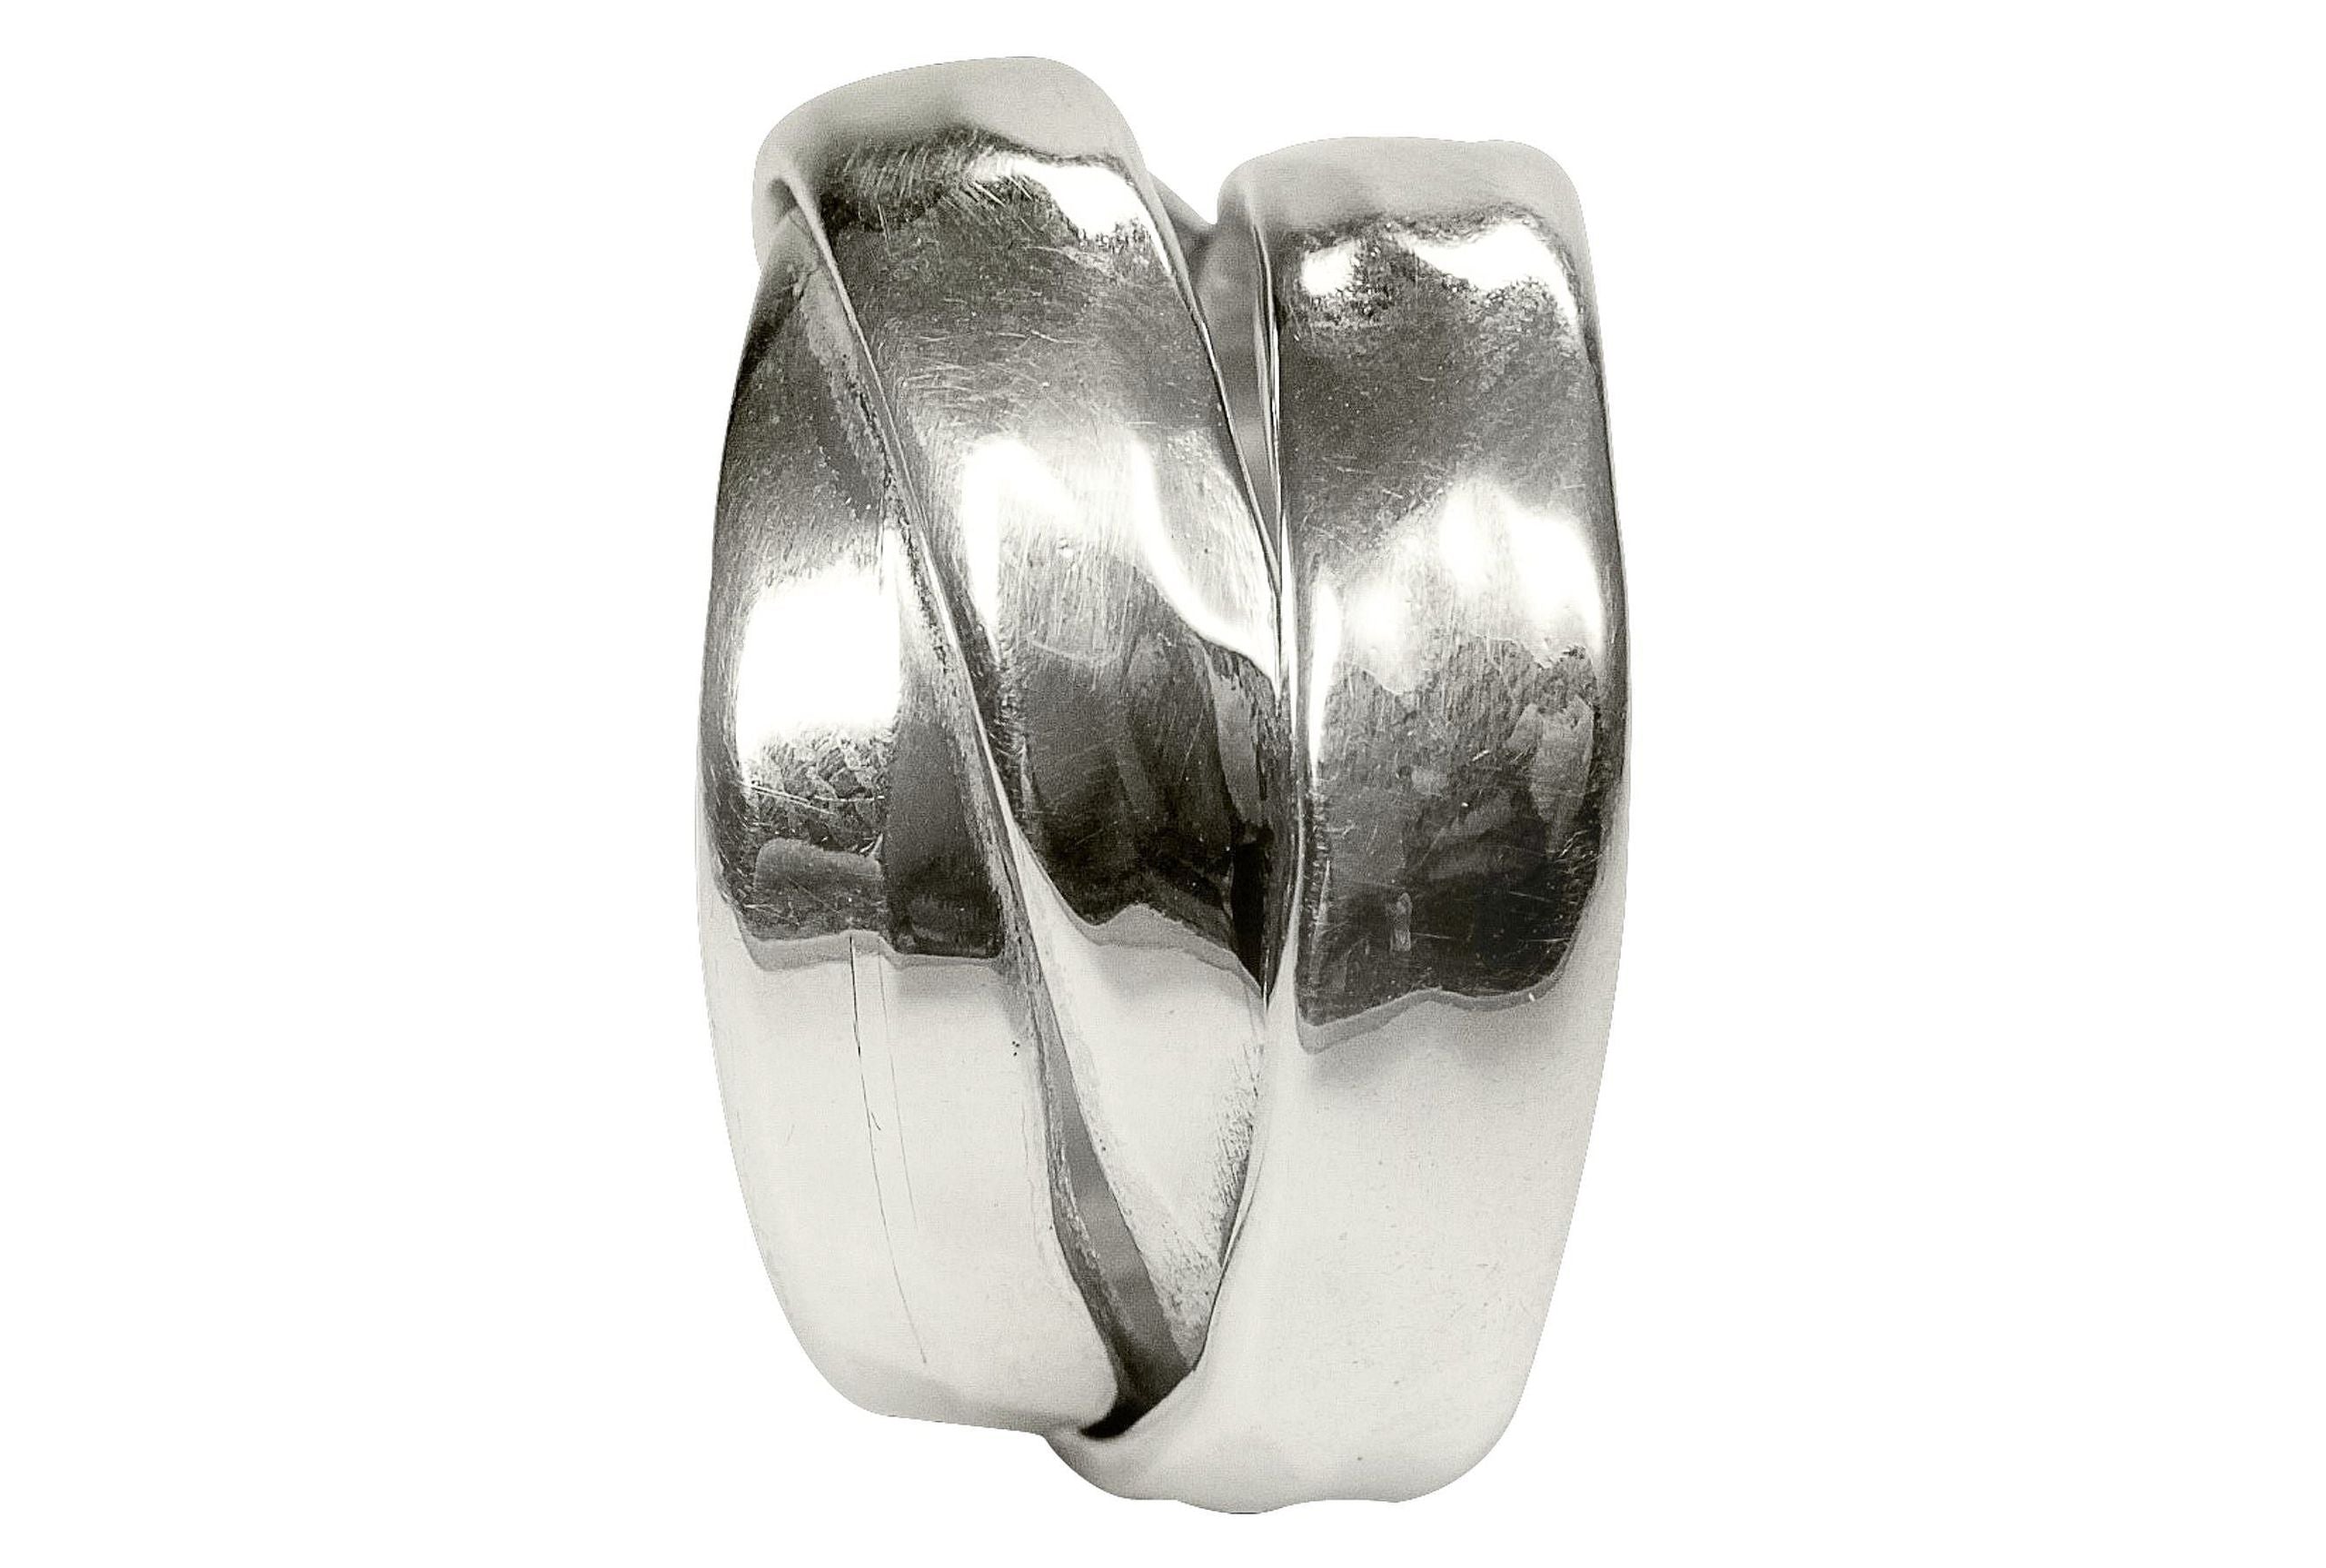 Eleganter Damenring aus Silber mit drei fest verbundenen Ringschienen. Der Ring ist geschmiedet und hat eine leicht gehämmerte Oberfläche.